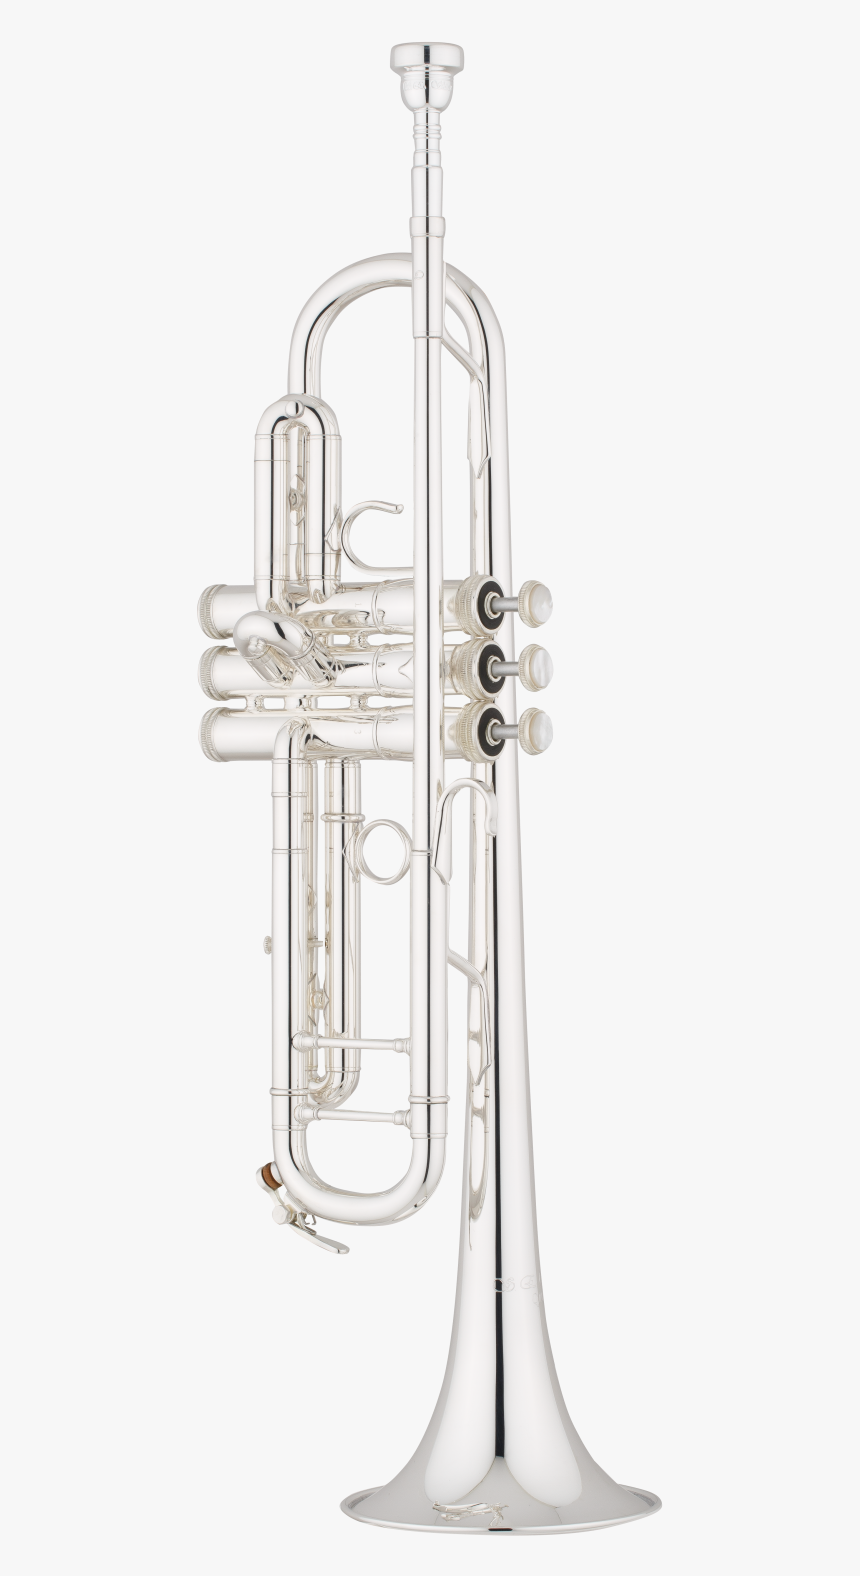 Shires Trumpet Q Series Q10s - Trumpet, HD Png Download, Free Download